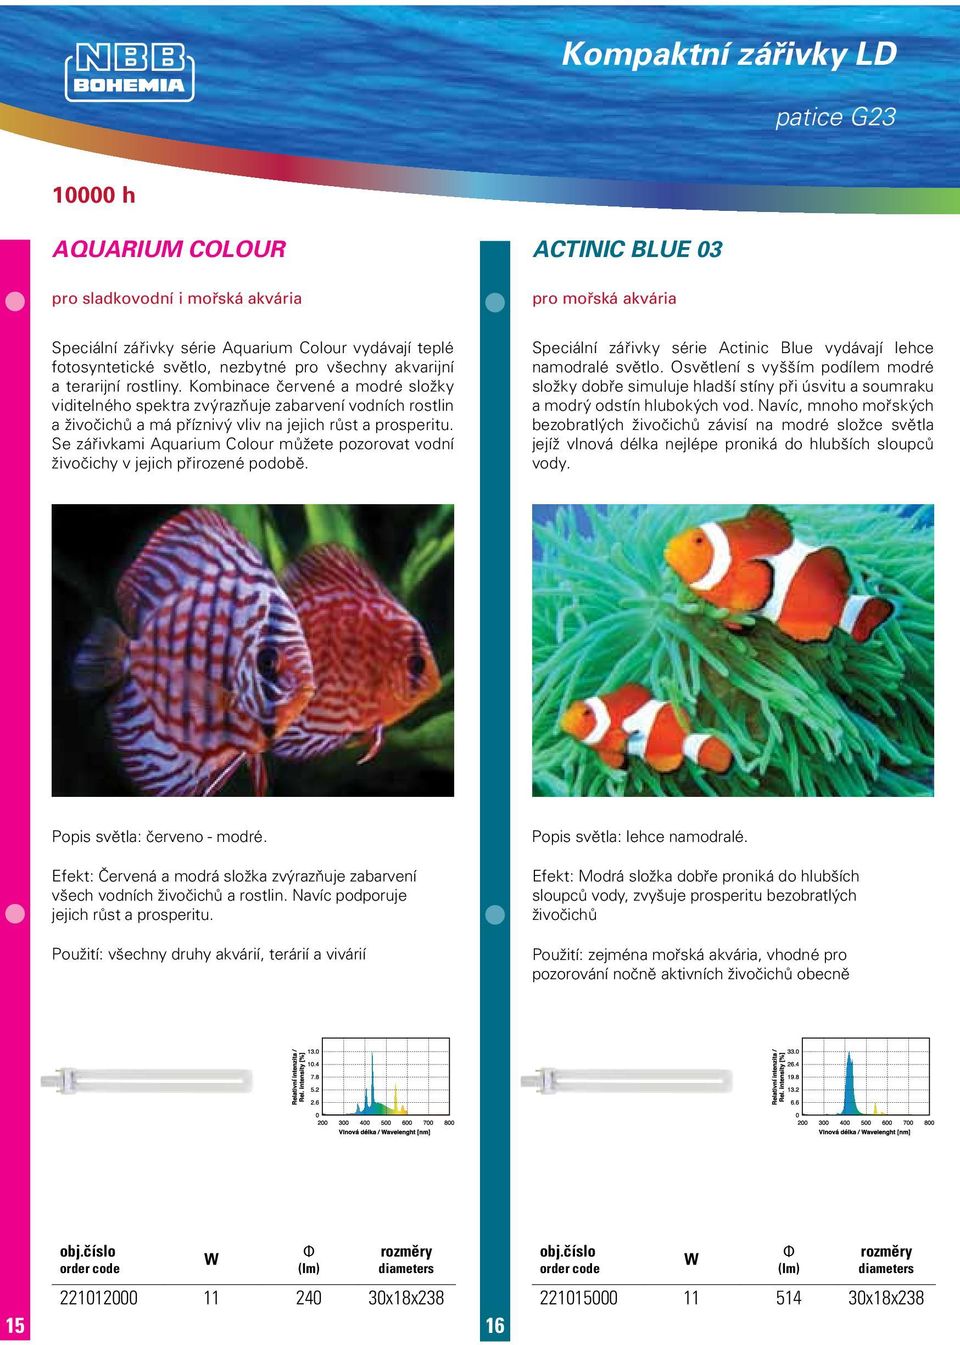 Se zářivkami Aquarium Colour můžete pozorovat vodní živočichy v jejich přirozené podobě. Speciální zářivky série Actinic Blue vydávají lehce namodralé světlo.